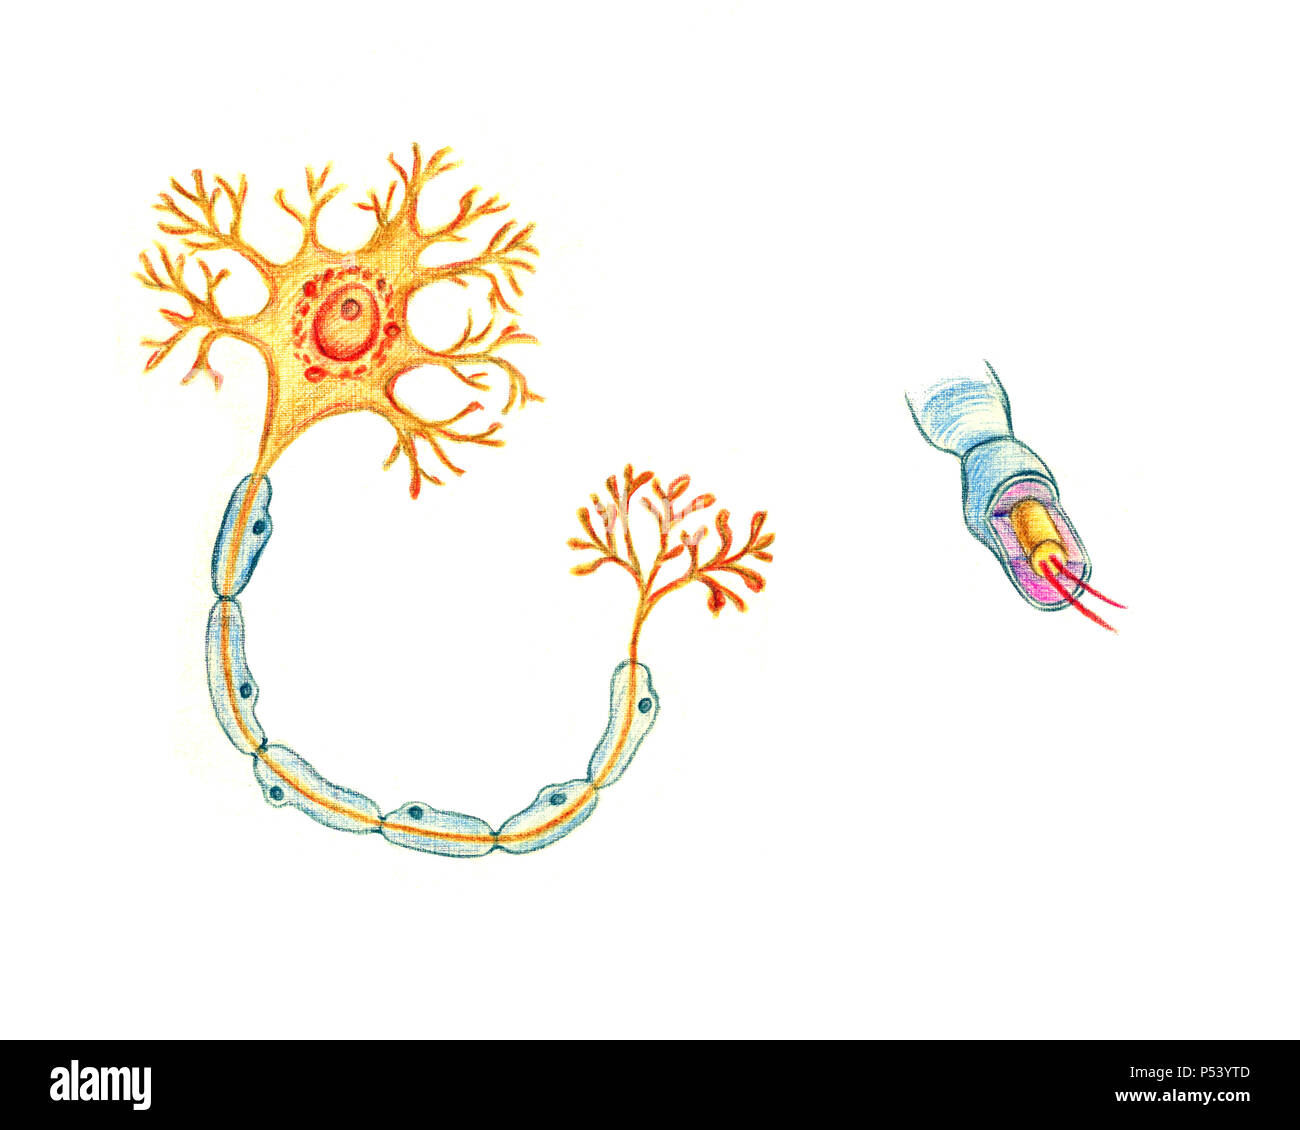 Structure d'un neurone typique, hand drawn illustration médicale, crayons de couleur dessin avec l'imitation de la lithographie Banque D'Images